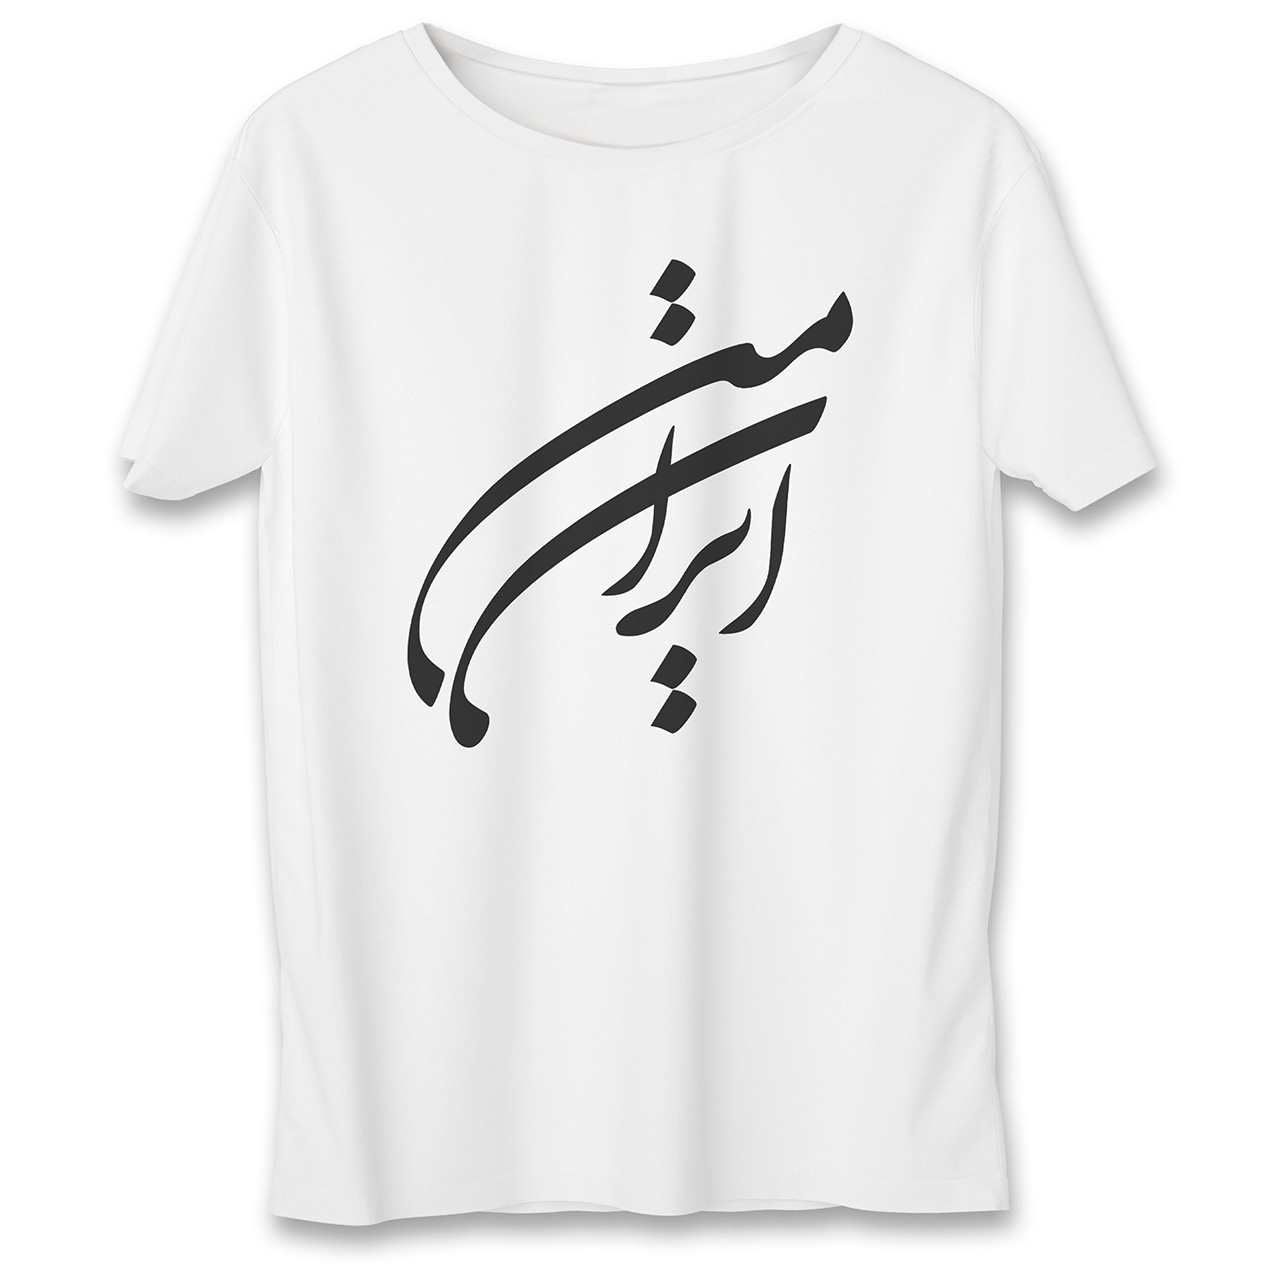 تی شرت یورپرینت به رسم طرح ایران من کد 520 -  - 1